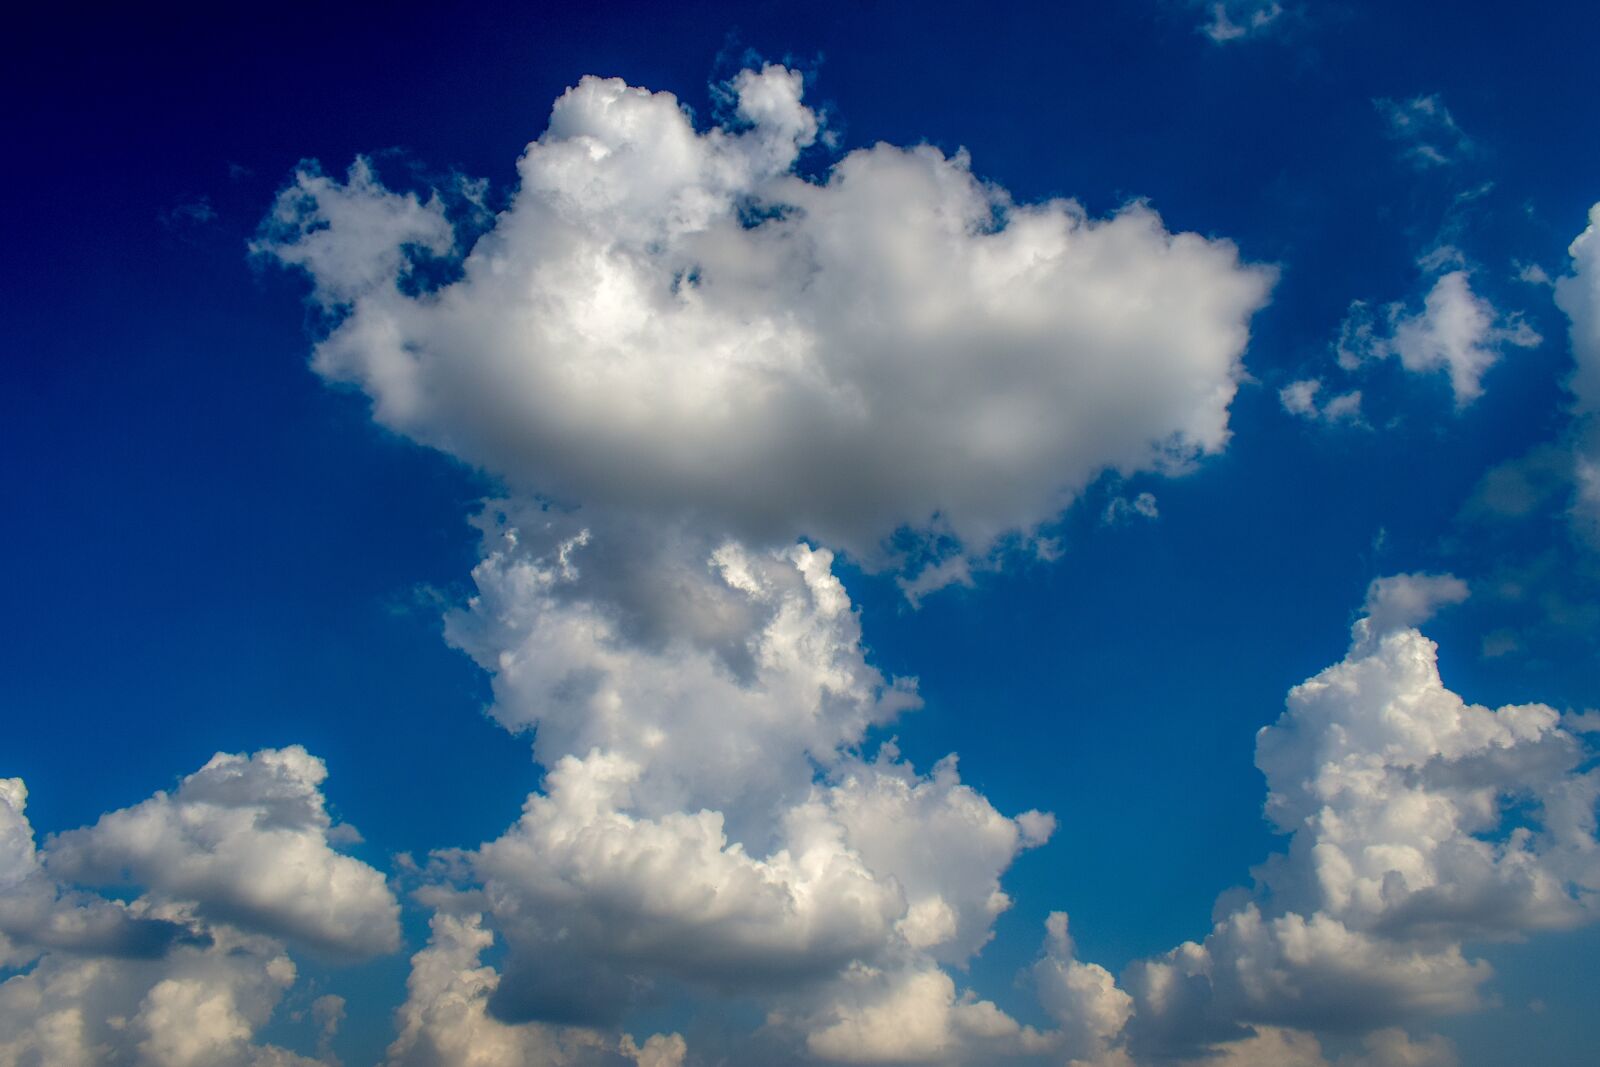 Nikon D3300 sample photo. Clouds, sky, nature photography